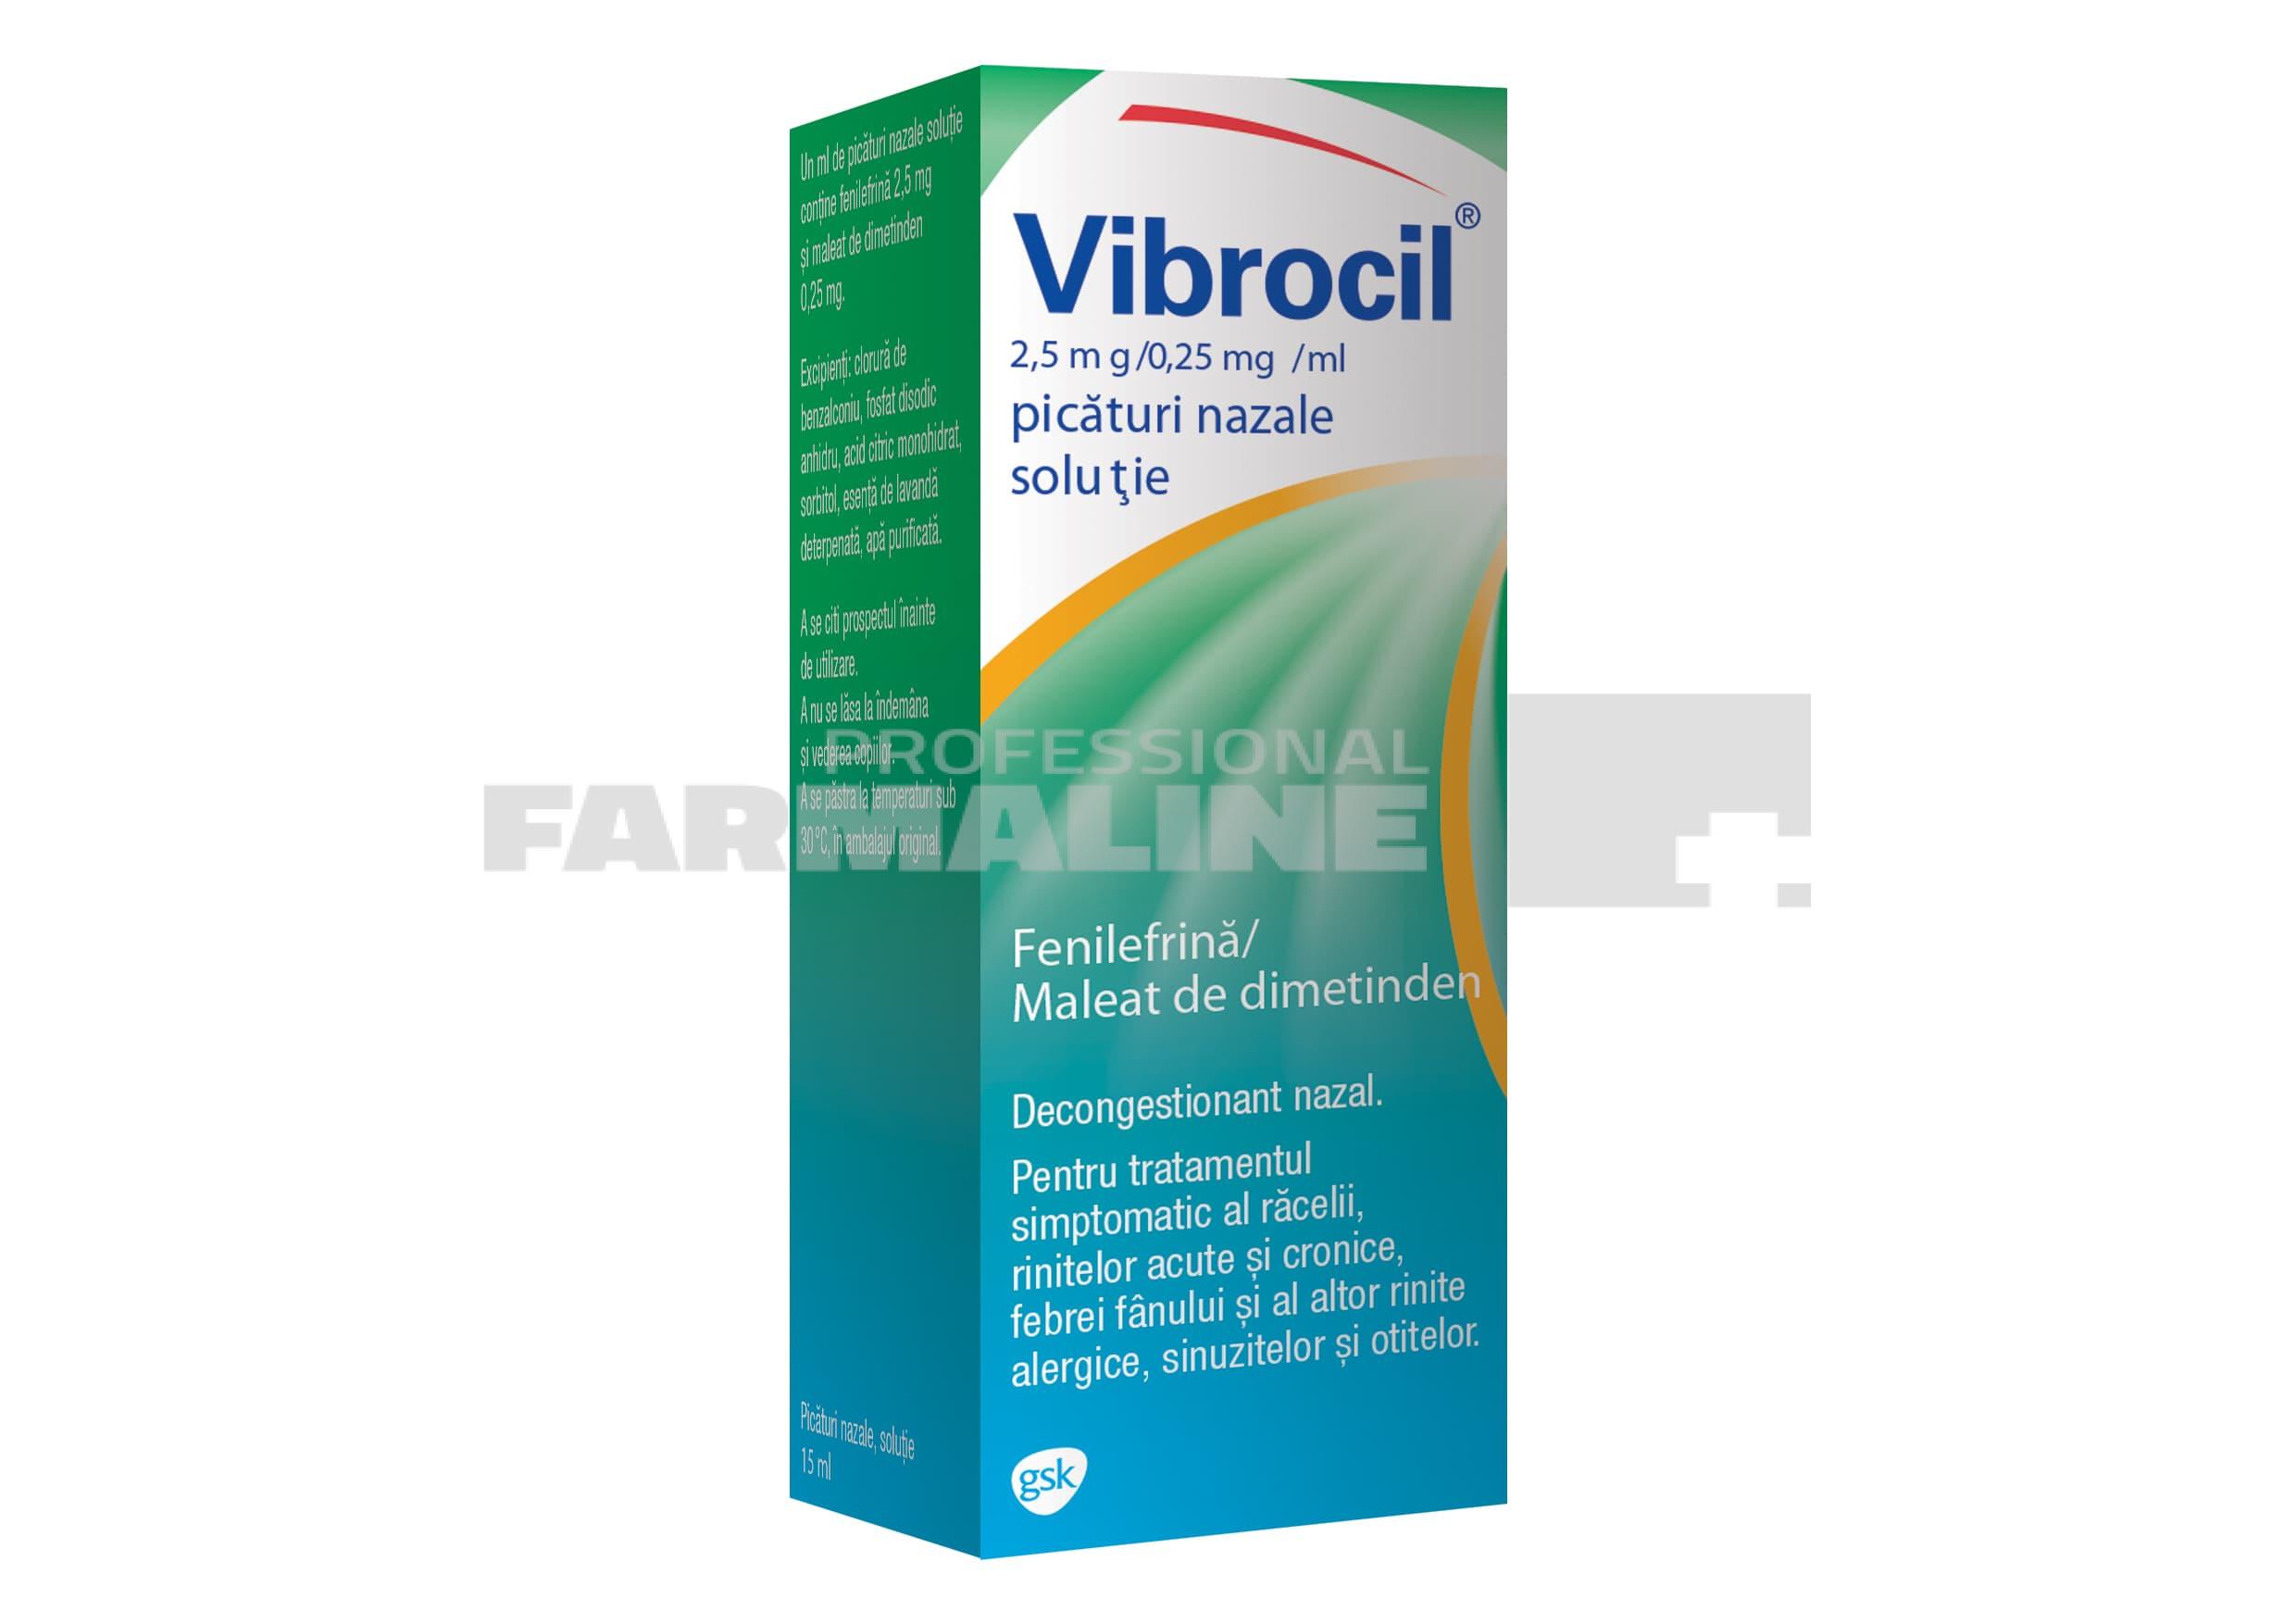 vibrocil 25 mg025mgml picaturi nazale 15 ml 170728 1 1592487892